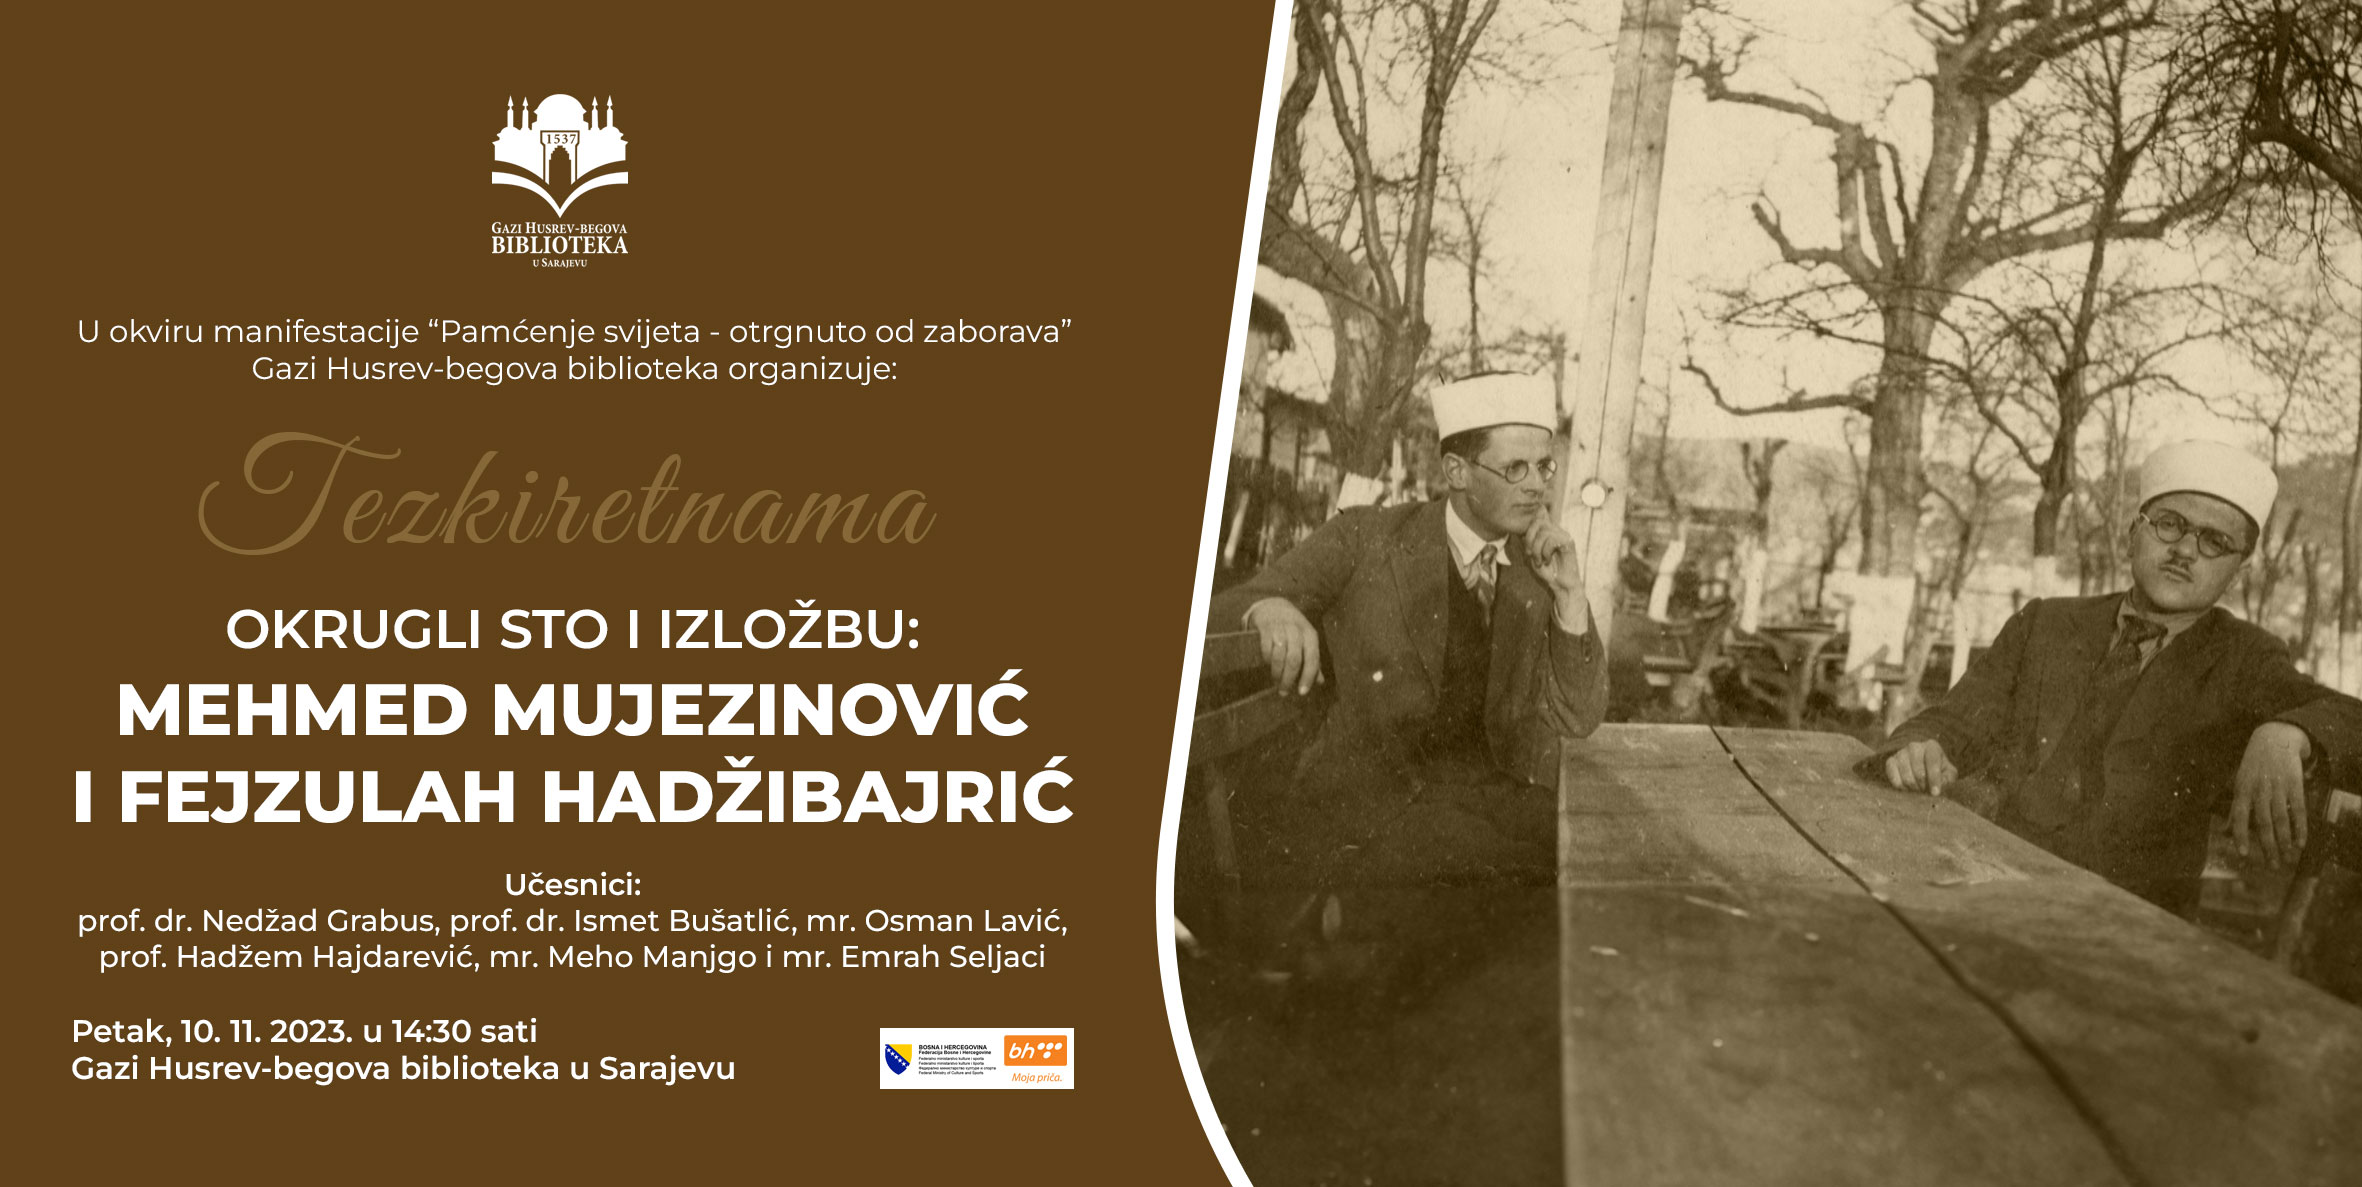 U okviru manifestacije „Pamćenje svijeta – otrgnuto od zaborava“  Gazi Husrev-begova biblioteka u Sarajevu organizira okrugli sto i izložbu  Mehmed Mujezinović i Fejzulah Hadžibajrić